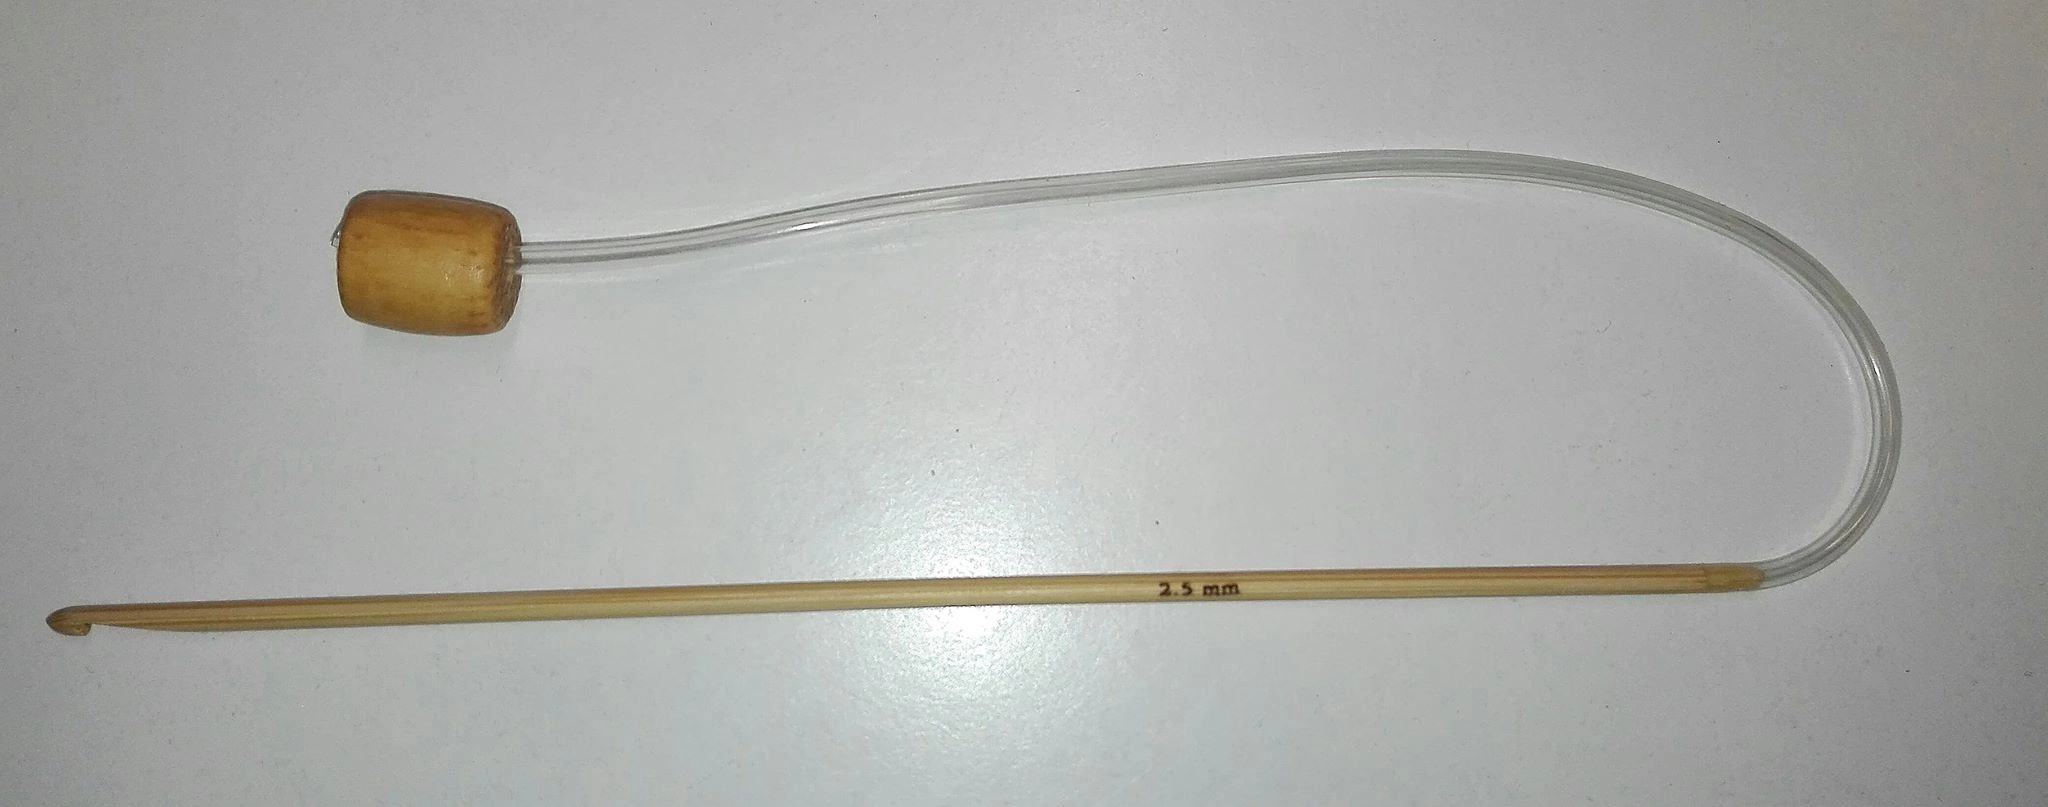 Damilos bambusz horgolótű 2,5 